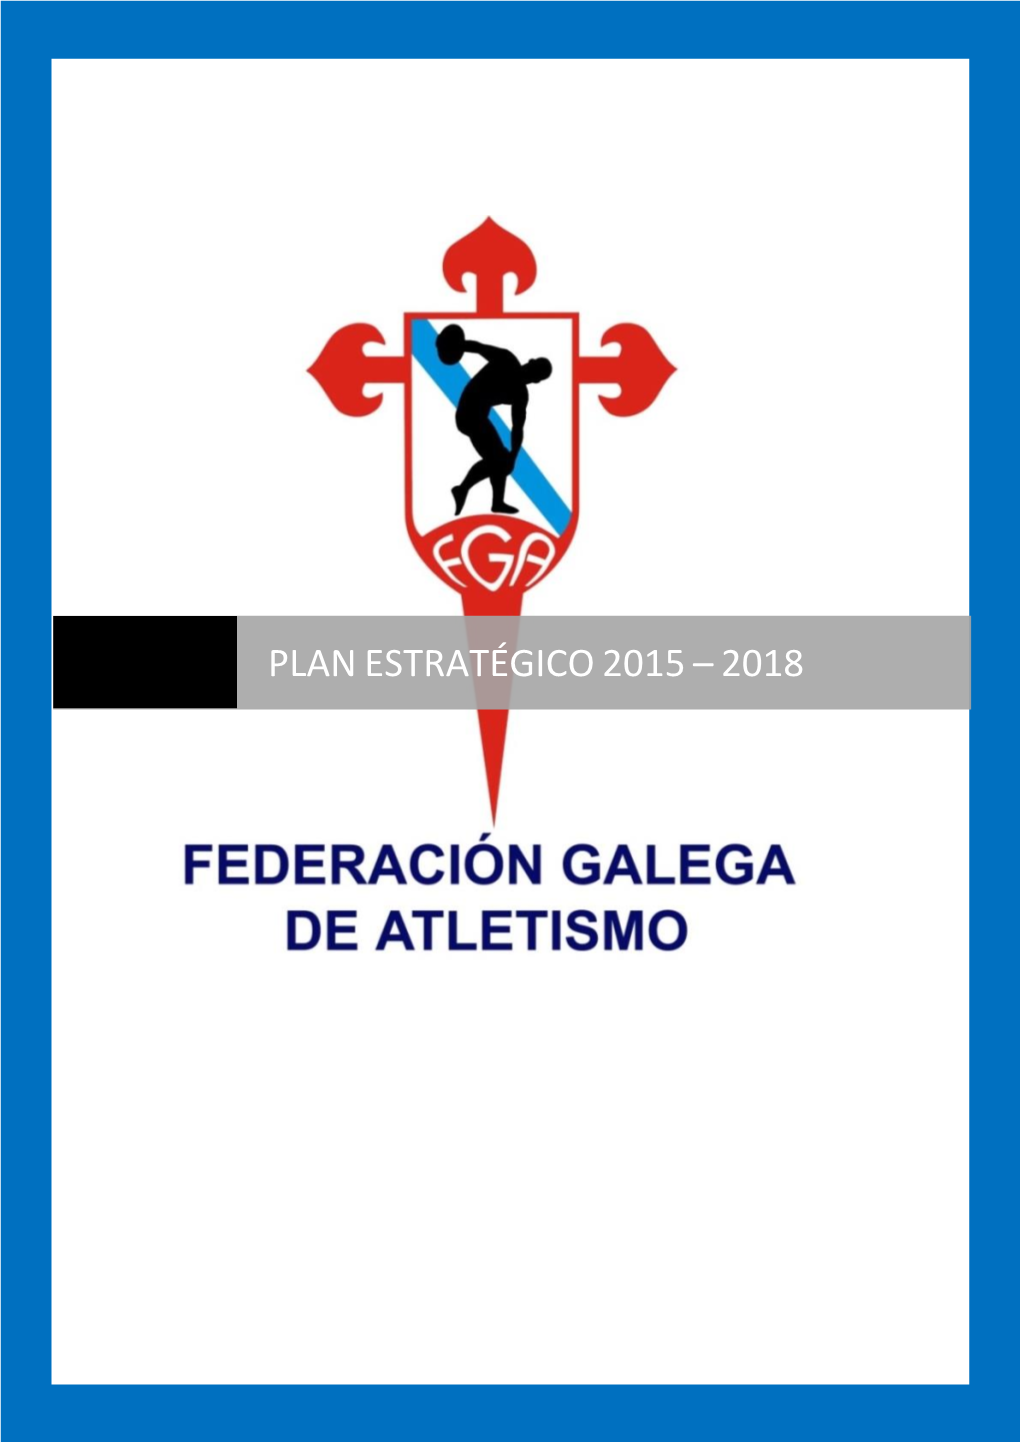 Plan Estratégico De La Federación Gallega De Atletismo 2015-2018